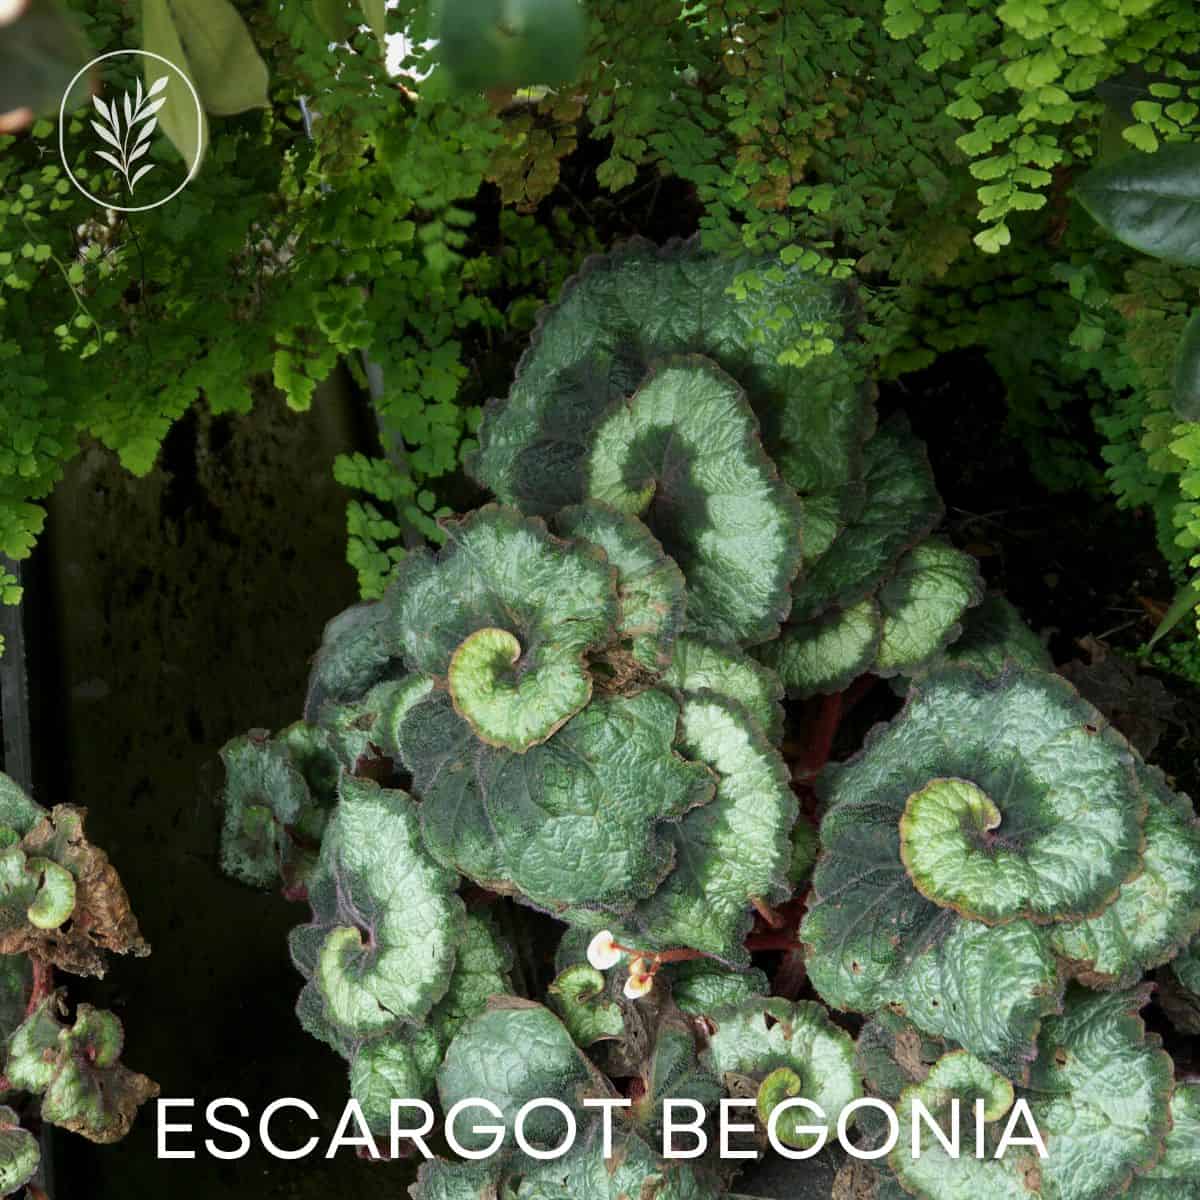 Escargot begonia via @home4theharvest